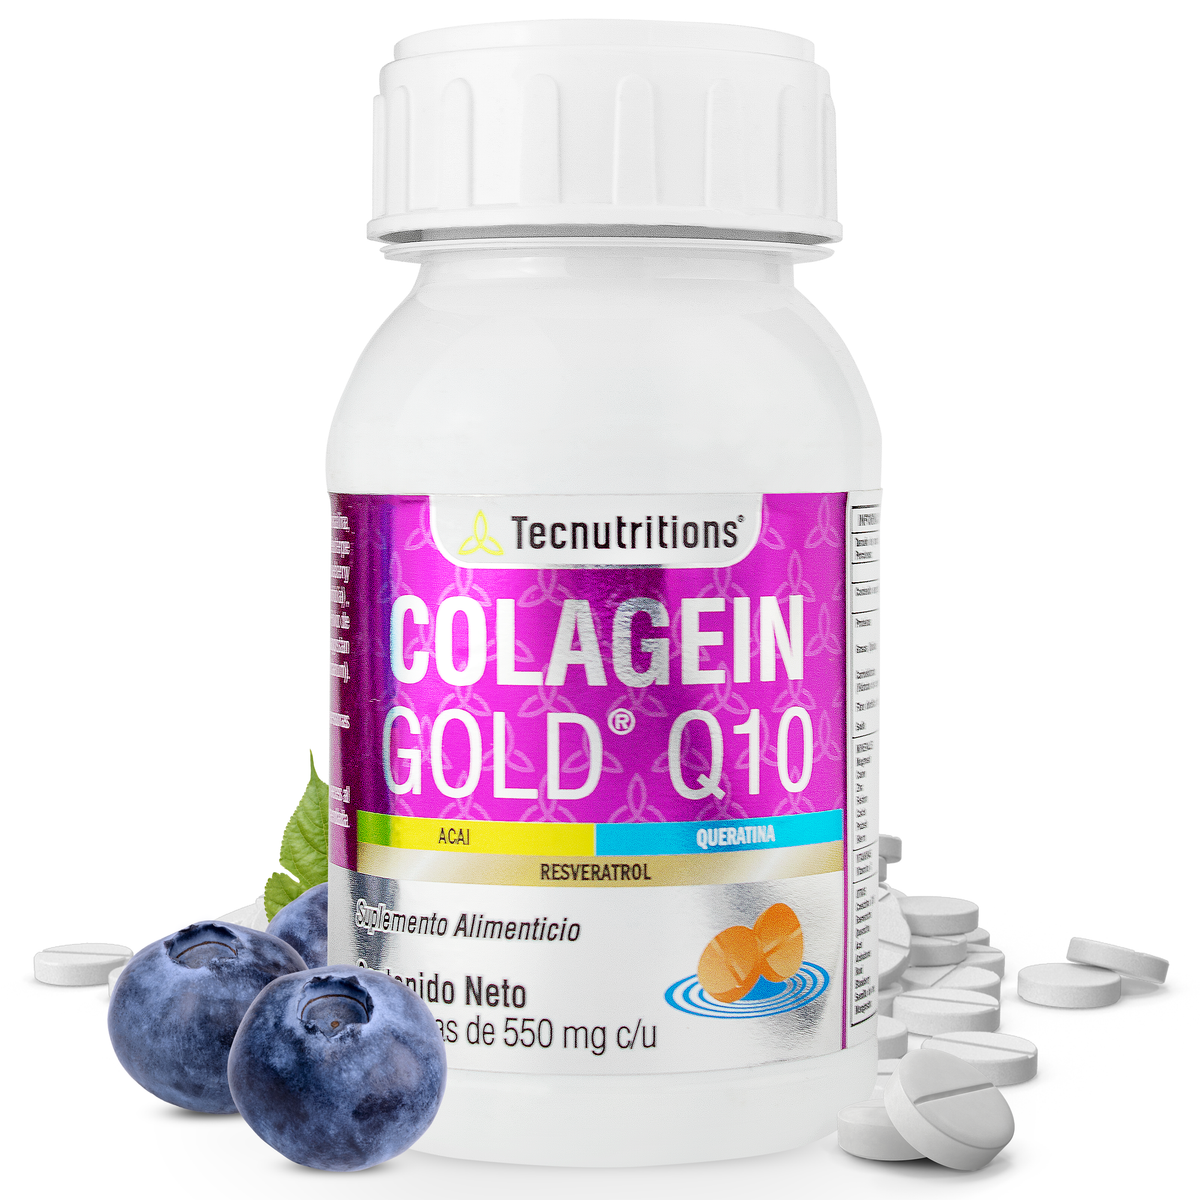 COLAGEIN GOLD Q10